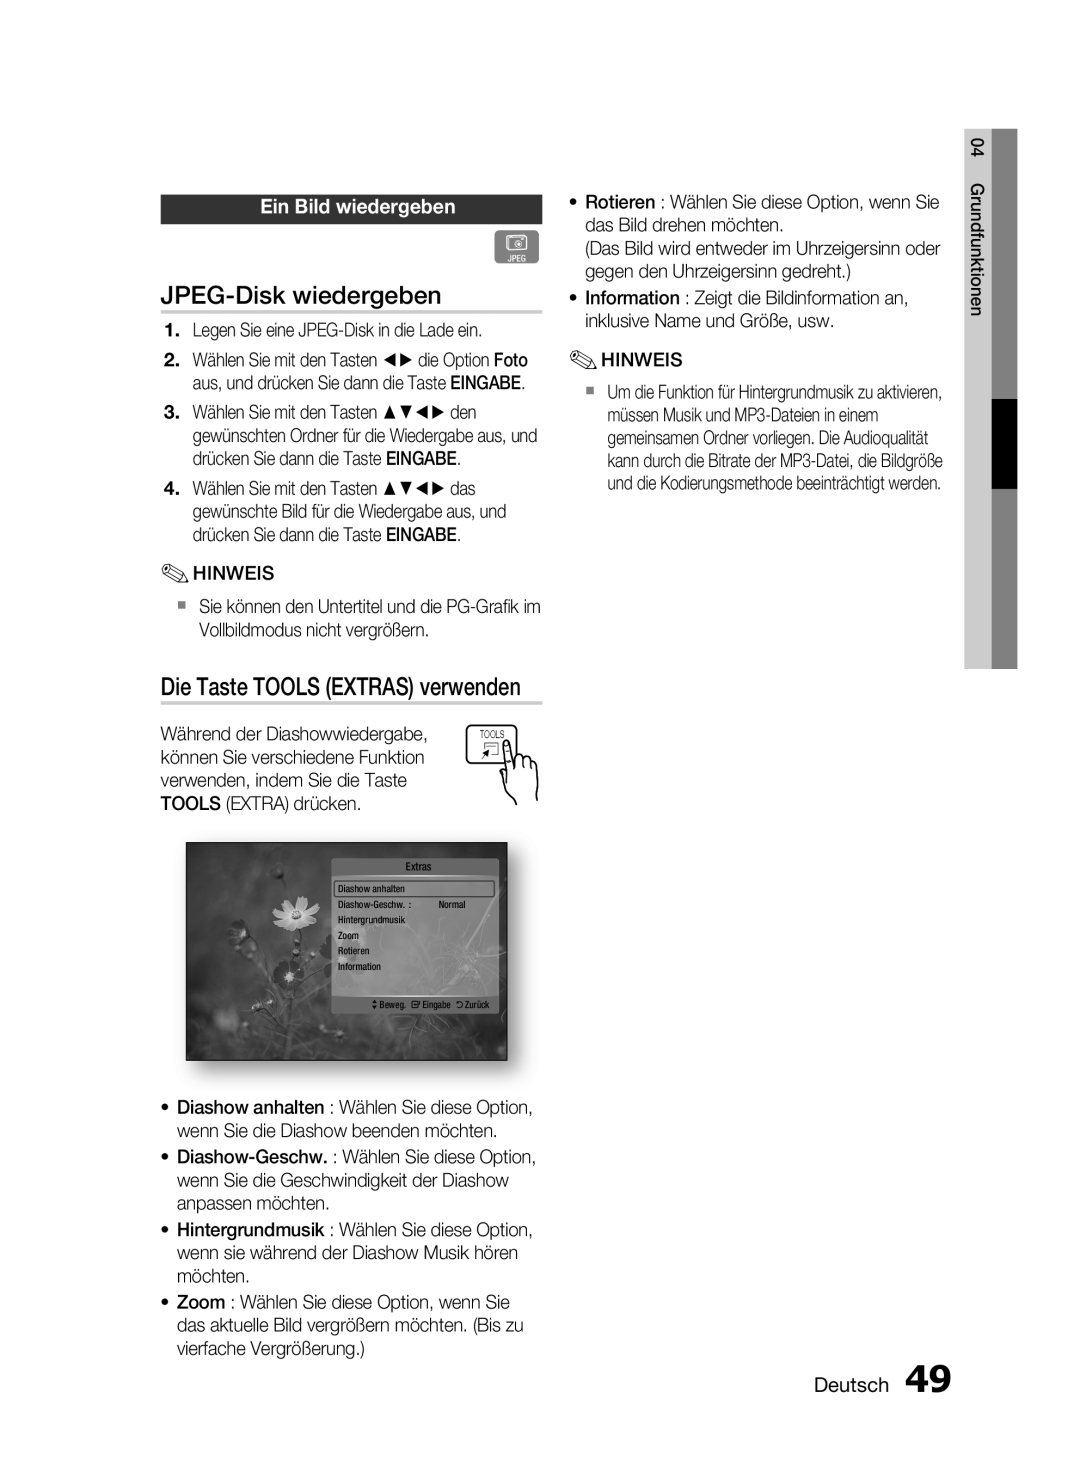 Samsung HT-C6200/EDC, HT-C6200/XEN JPEG-Disk wiedergeben, Die Taste TOOLS EXTRAS verwenden, Ein Bild wiedergeben, Deutsch 